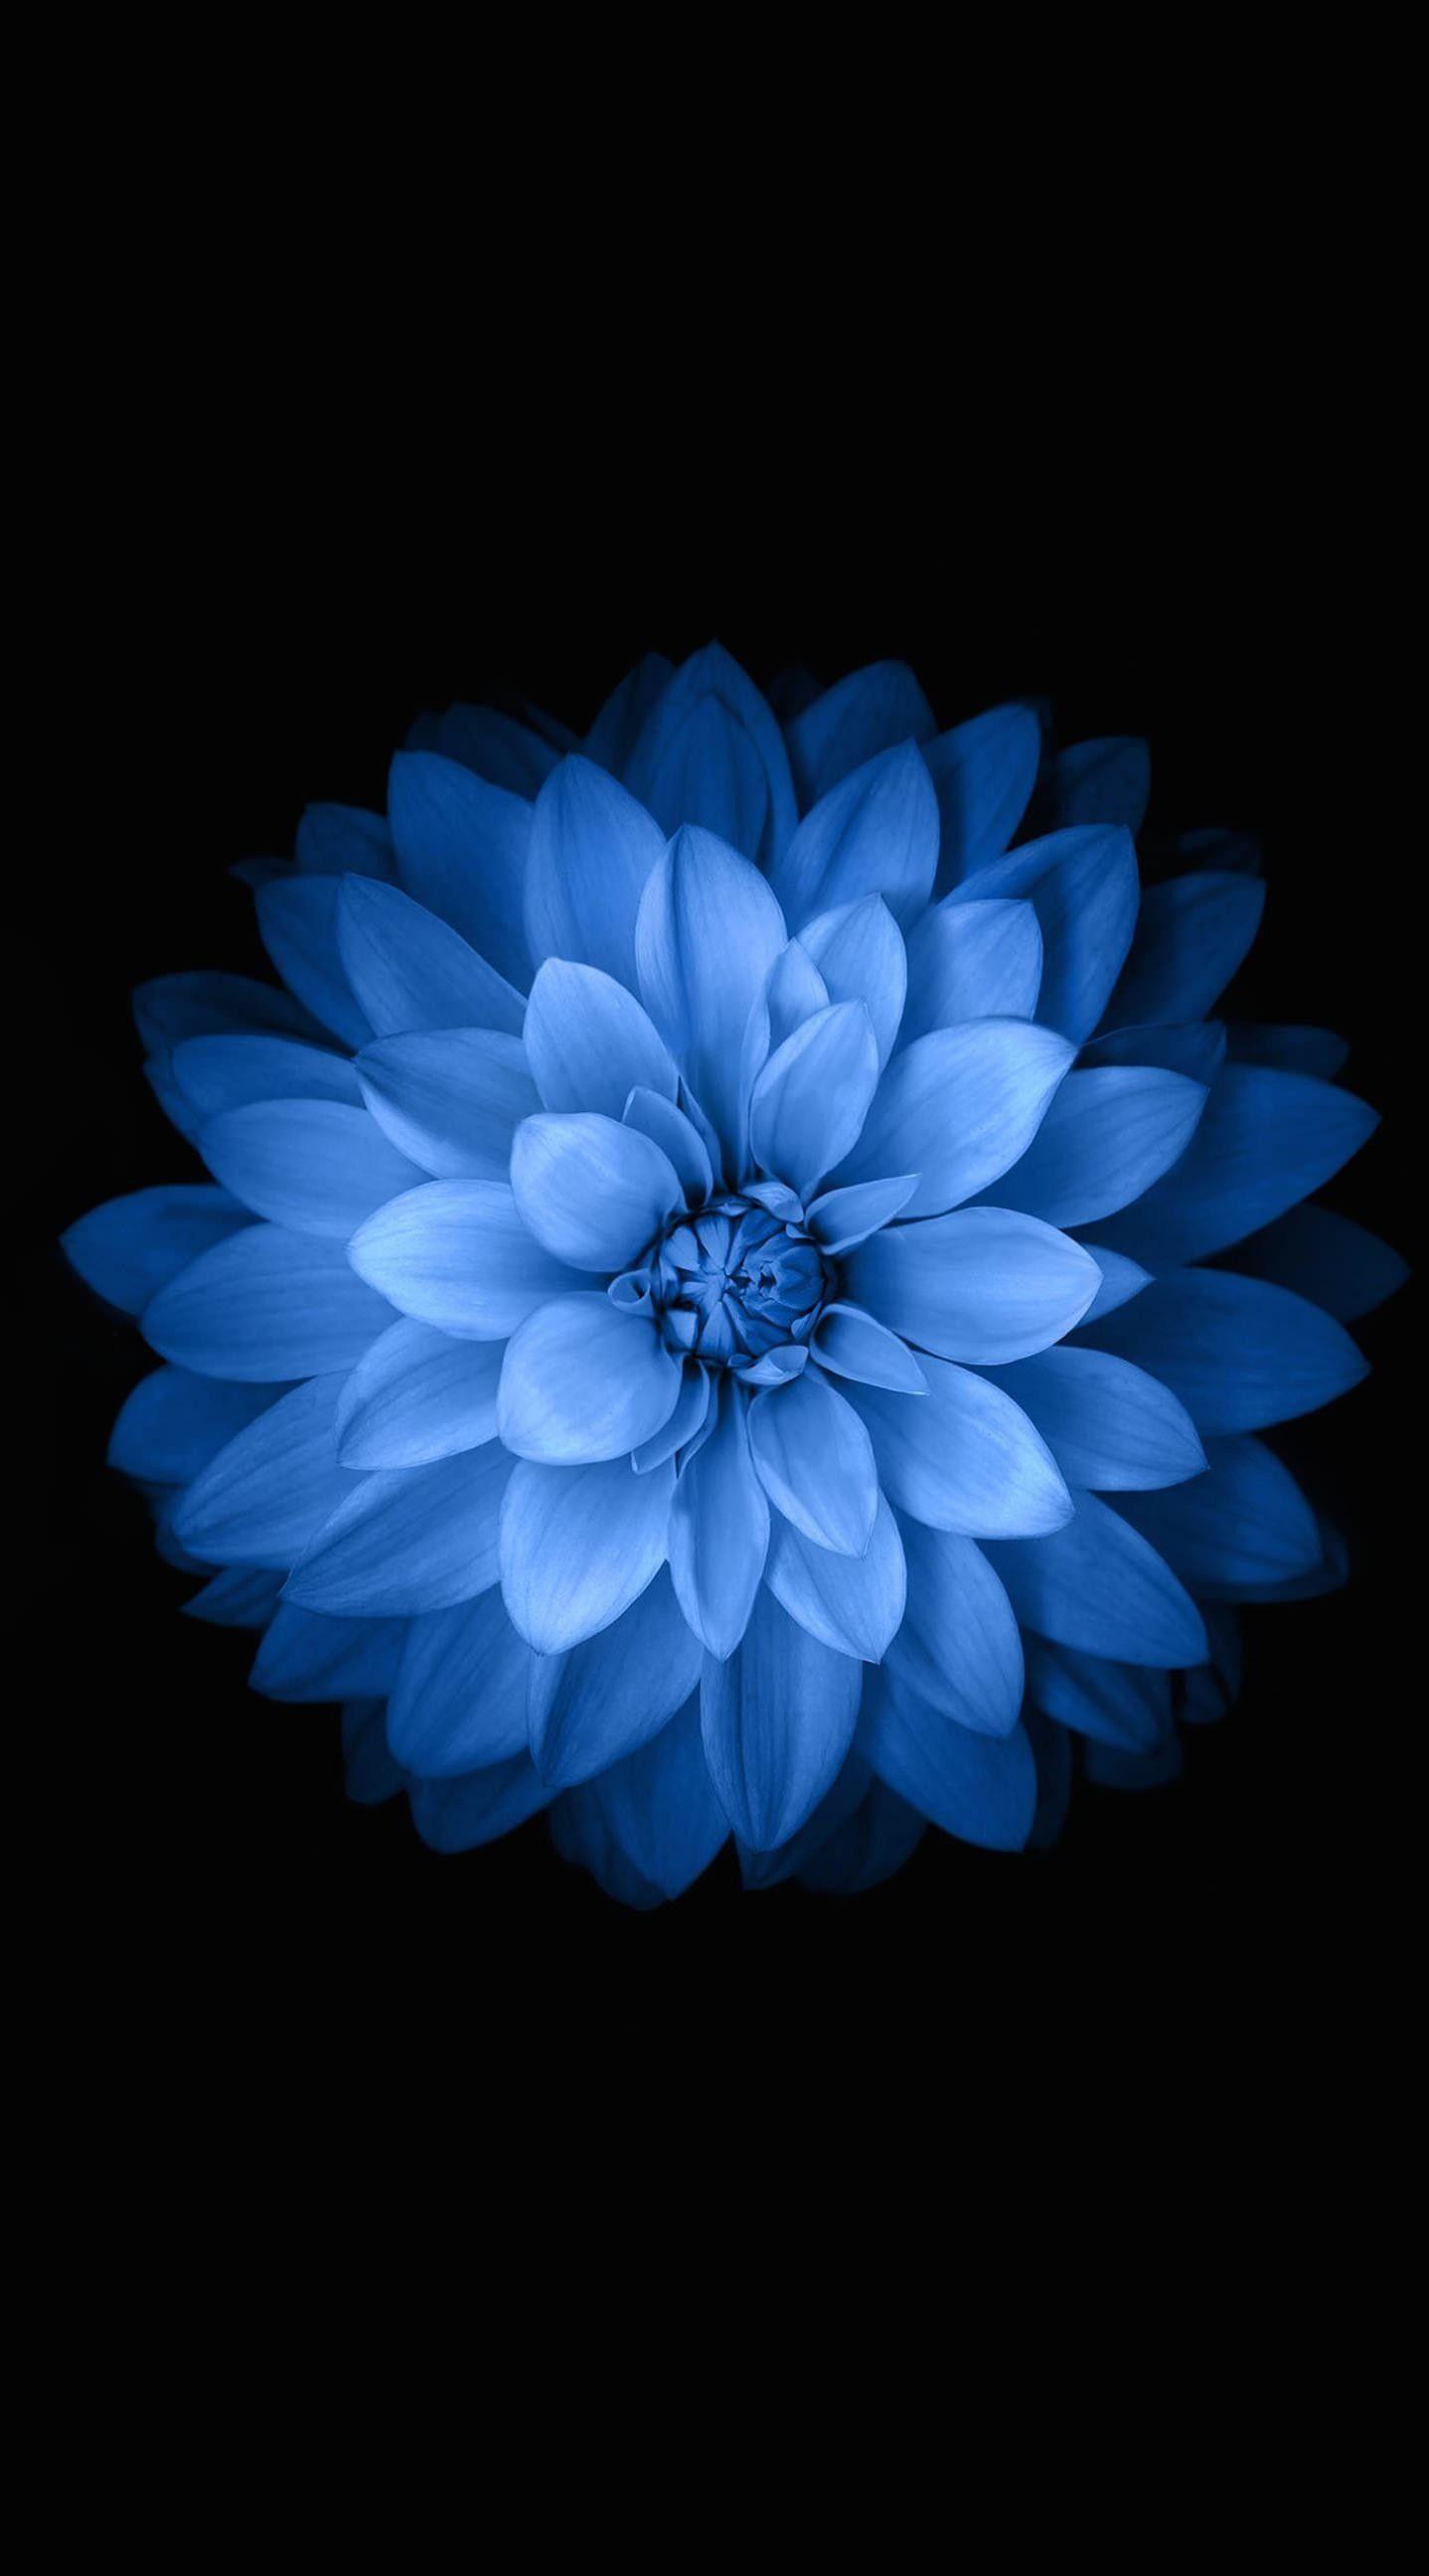 Hoa màu xanh sẽ mang đến vẻ đẹp và tươi mới cho không gian sống của bạn. Hãy xem qua hình ảnh về những bông hoa xanh tuyệt đẹp và hấp dẫn này và cùng tìm kiếm cách để thêm chúng vào vườn của bạn.